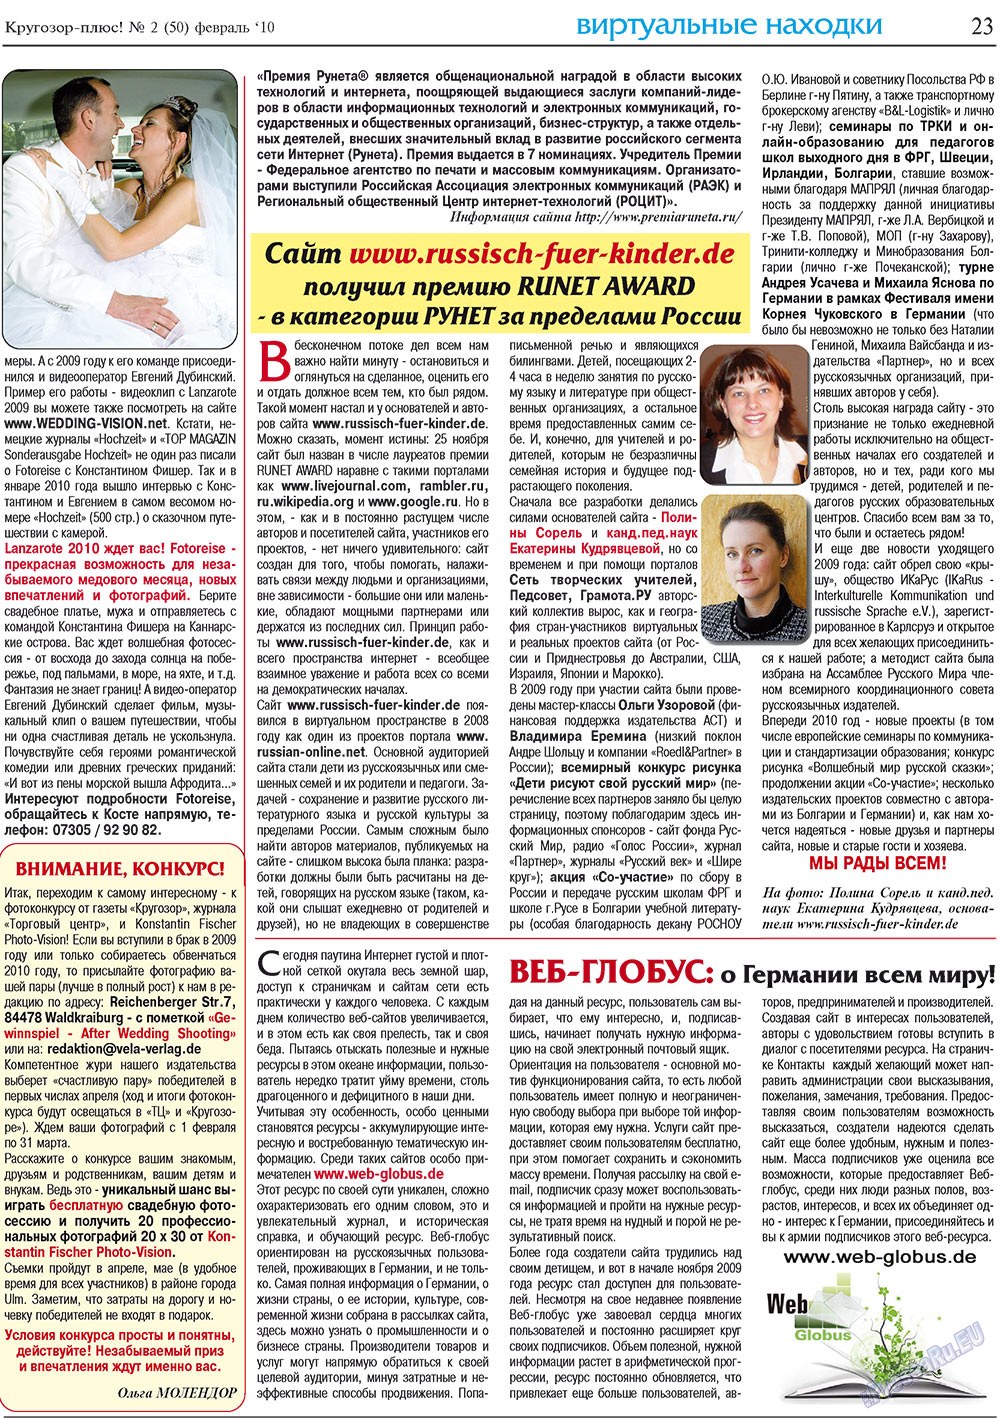 Кругозор плюс!, газета. 2010 №2 стр.23